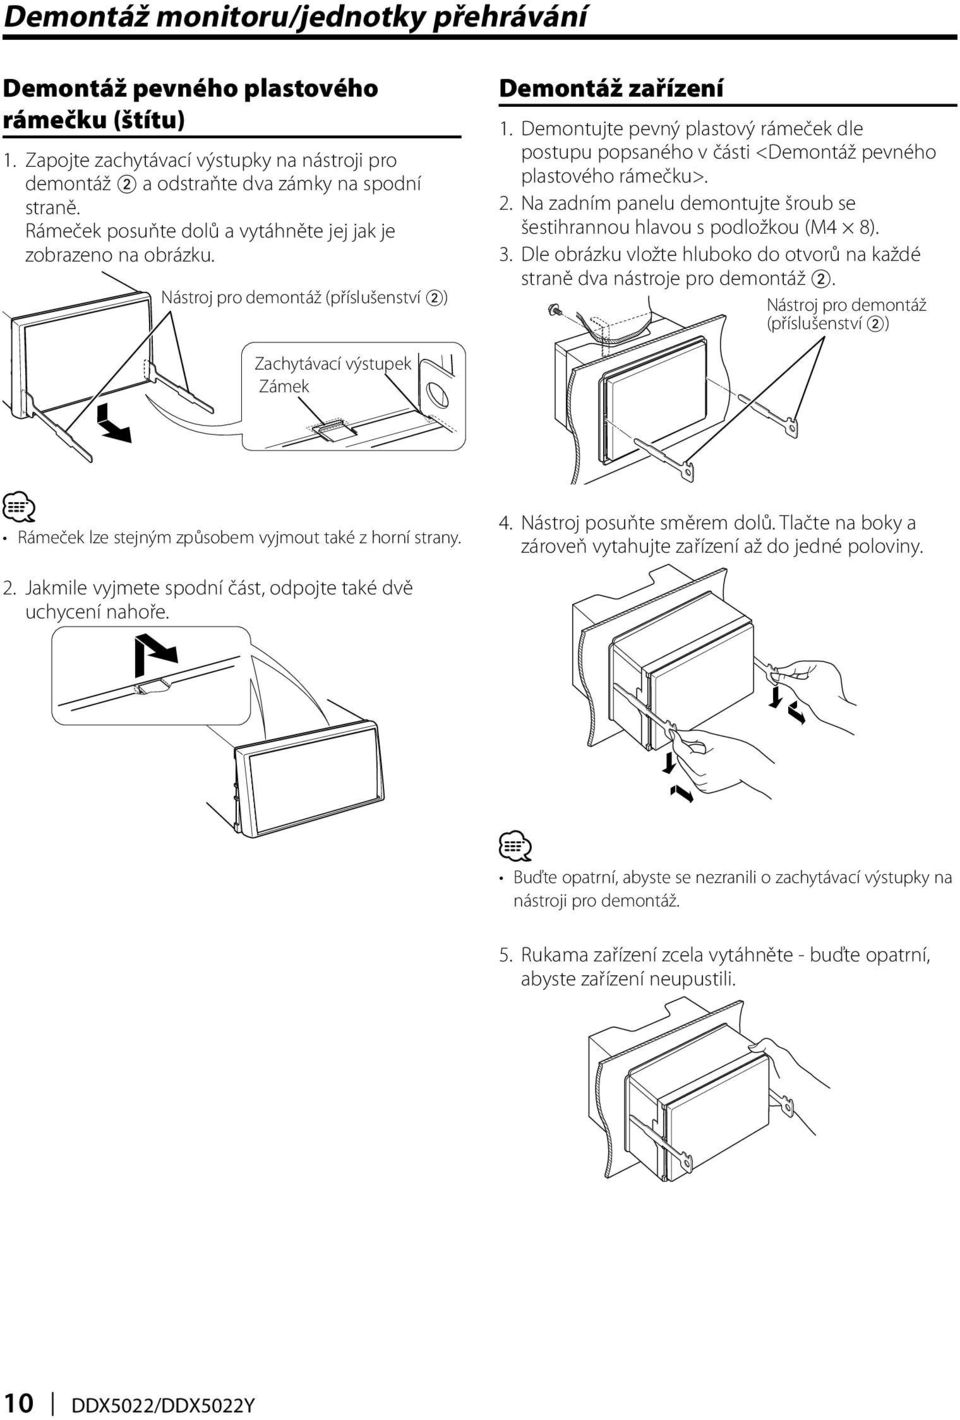 Demontujte pevný plastový rámeček dle postupu popsaného v části <Demontáž pevného plastového rámečku>. 2. Na zadním panelu demontujte šroub se šestihrannou hlavou s podložkou (M4 8). 3.